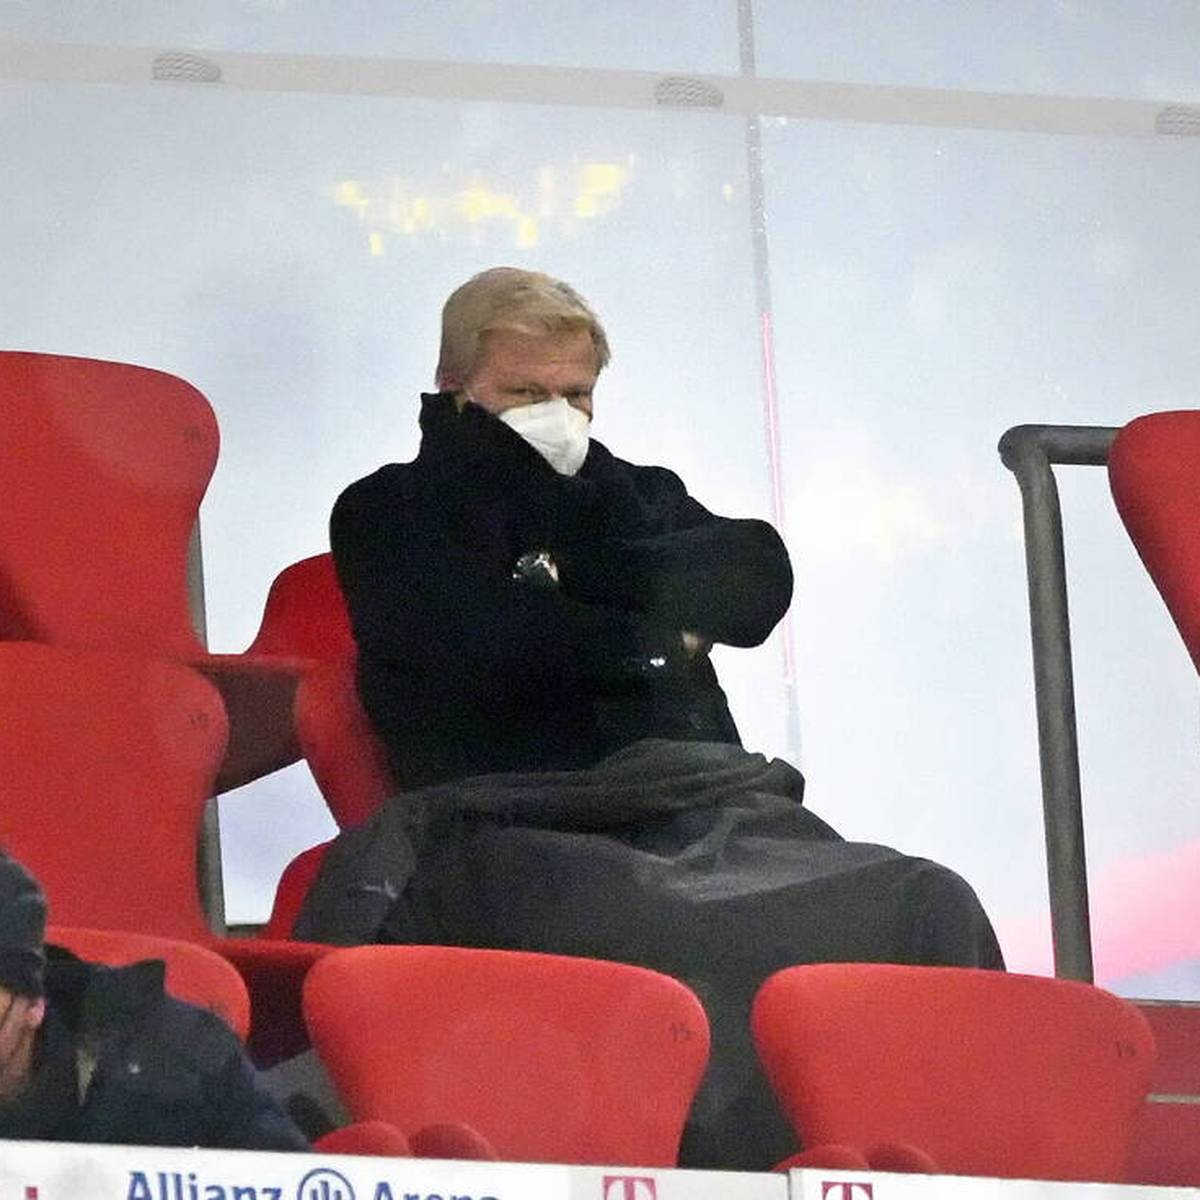 Der FC Bayern muss derzeit auf Zuschauer in der Allianz Arena verzichten. Oliver Kahn hofft, dass sich das trotz der angespannten Corona-Lage schnell wieder ändert.